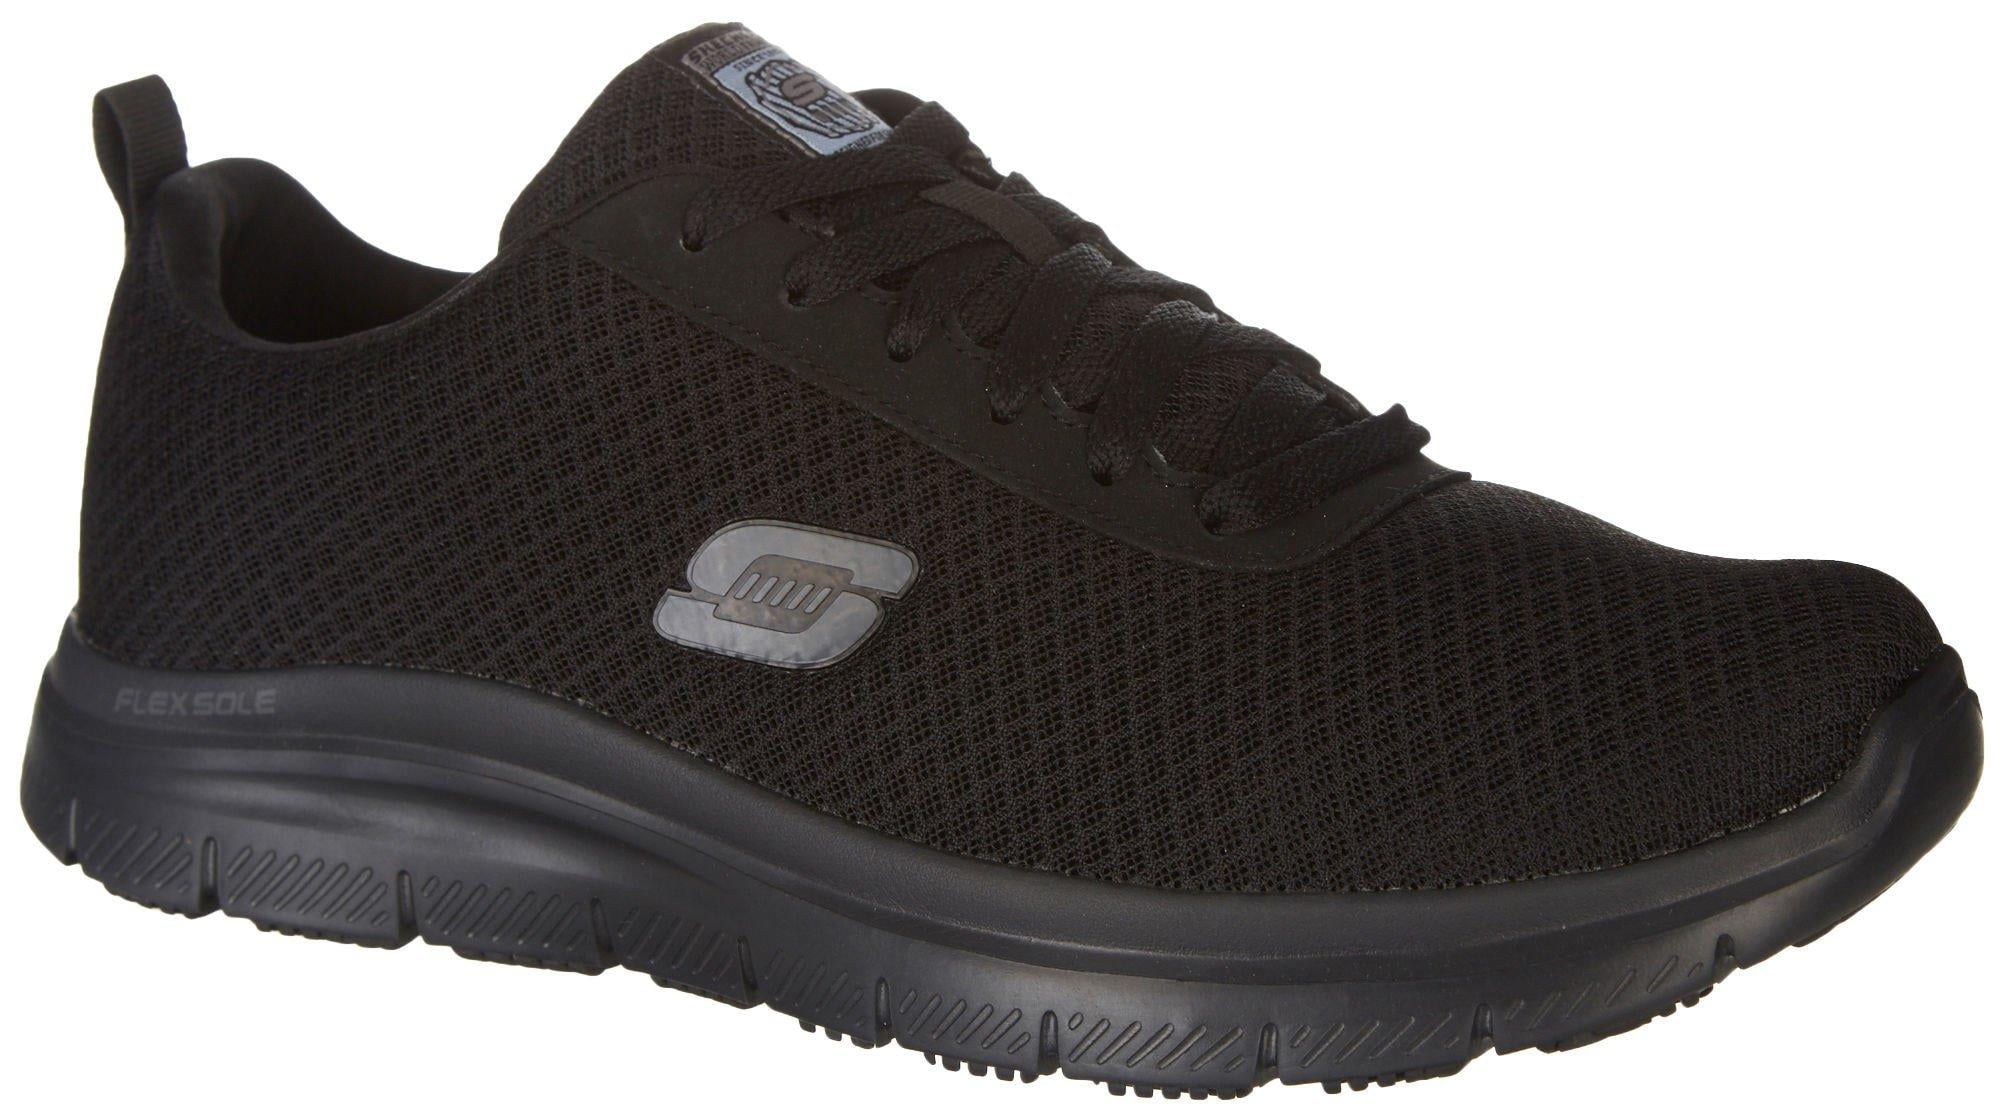 Skechers Men's Flex - Bendon Slip Resistant Athletic Work Shoes - Wide Available - Walmart.com